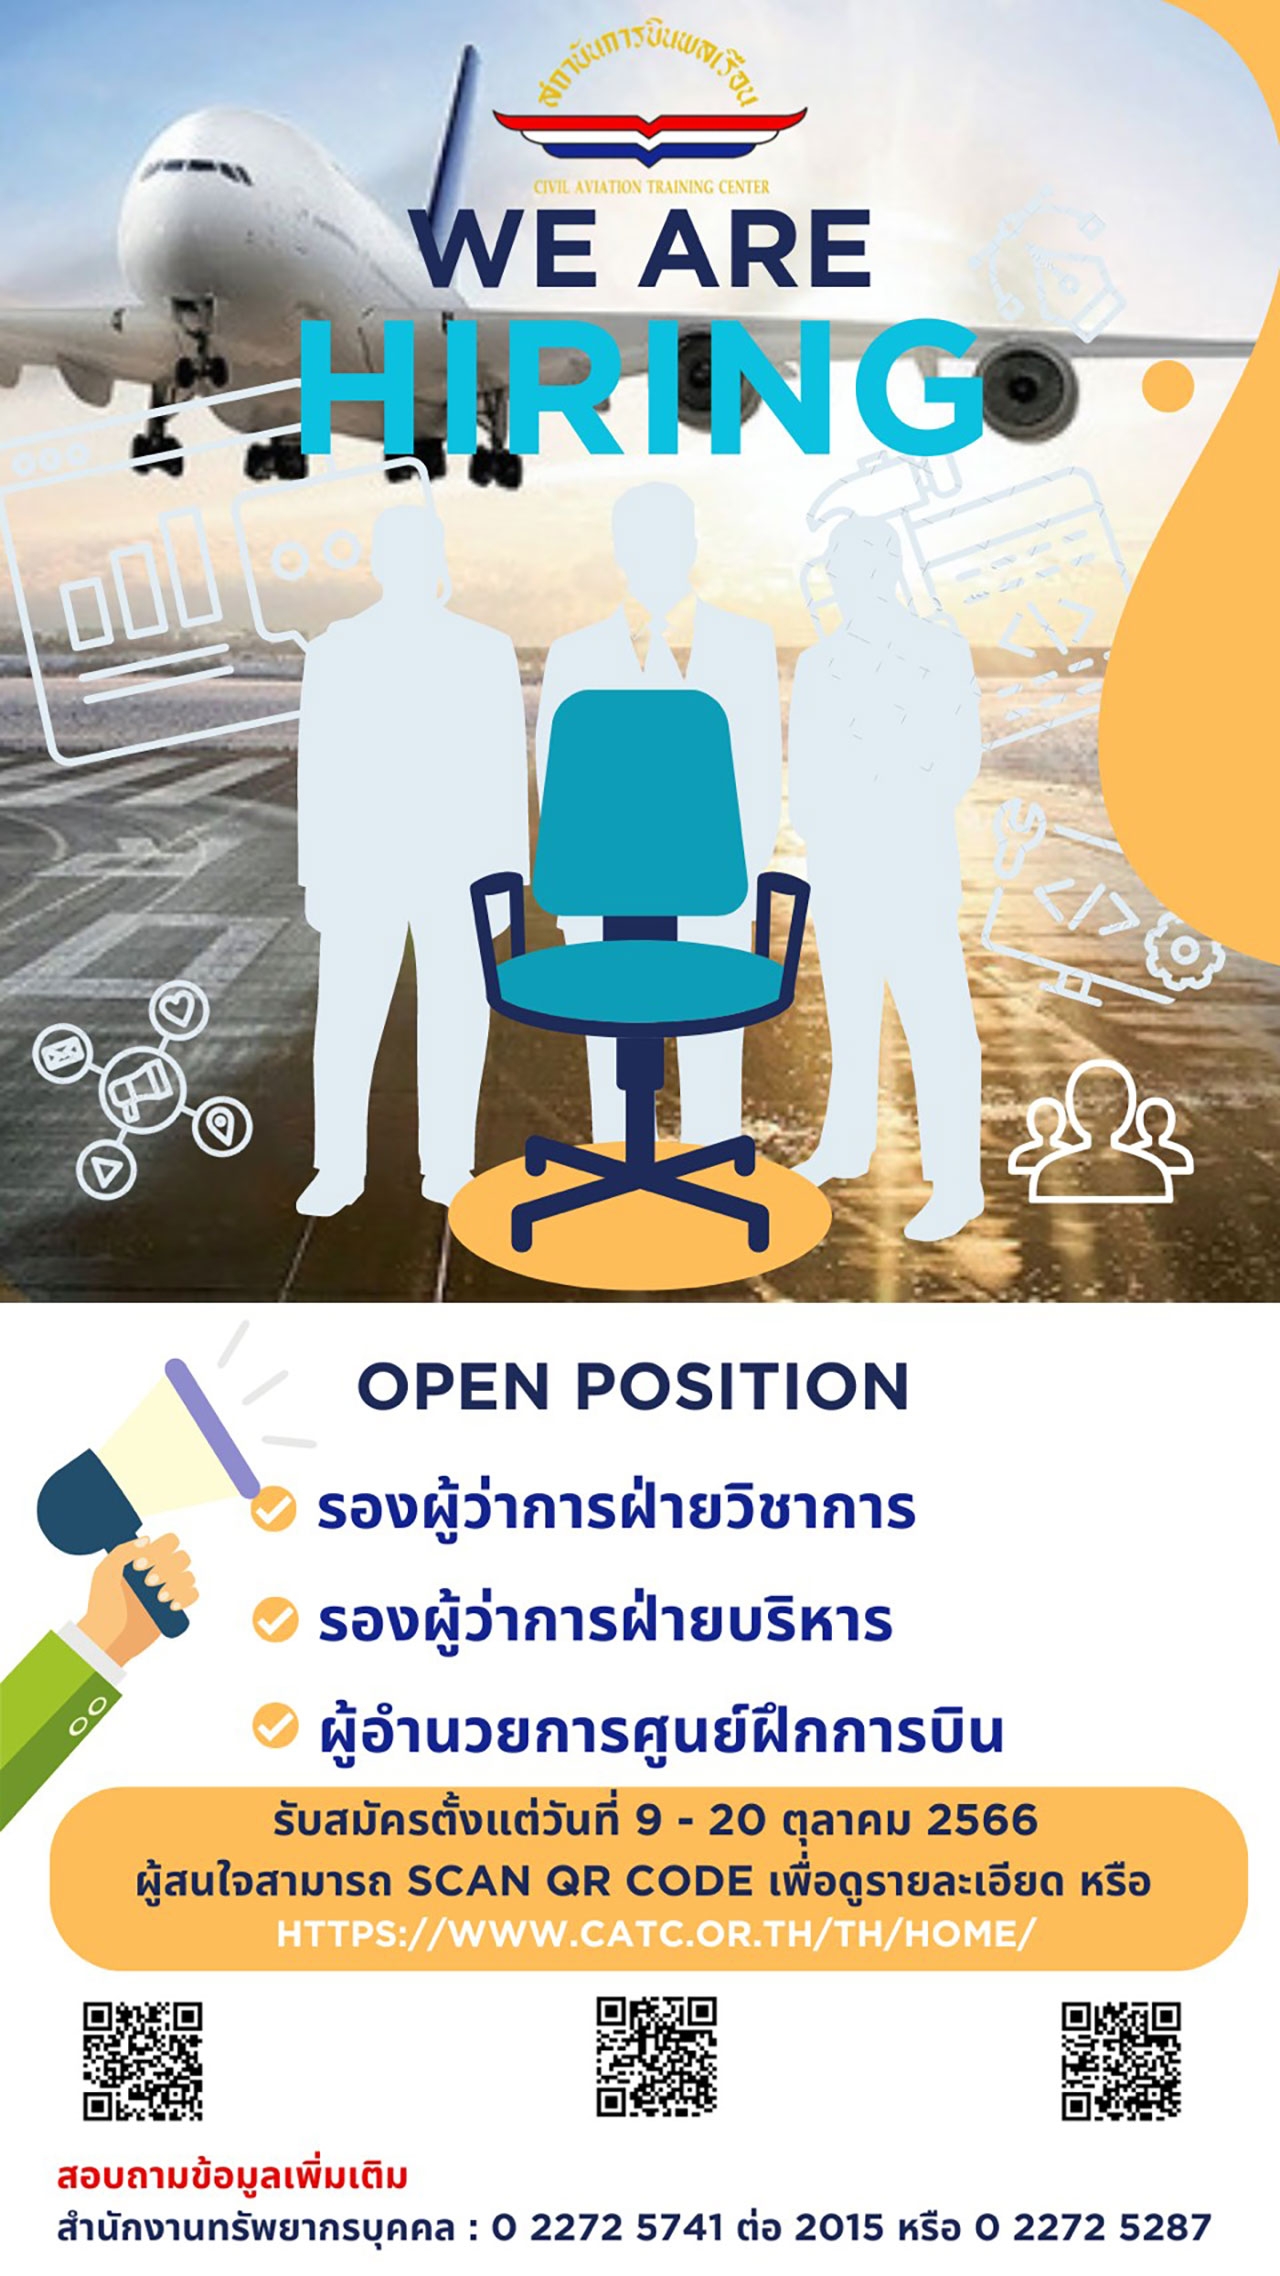 隶属泰国交通运输部的国企机构民航学院公开招聘！